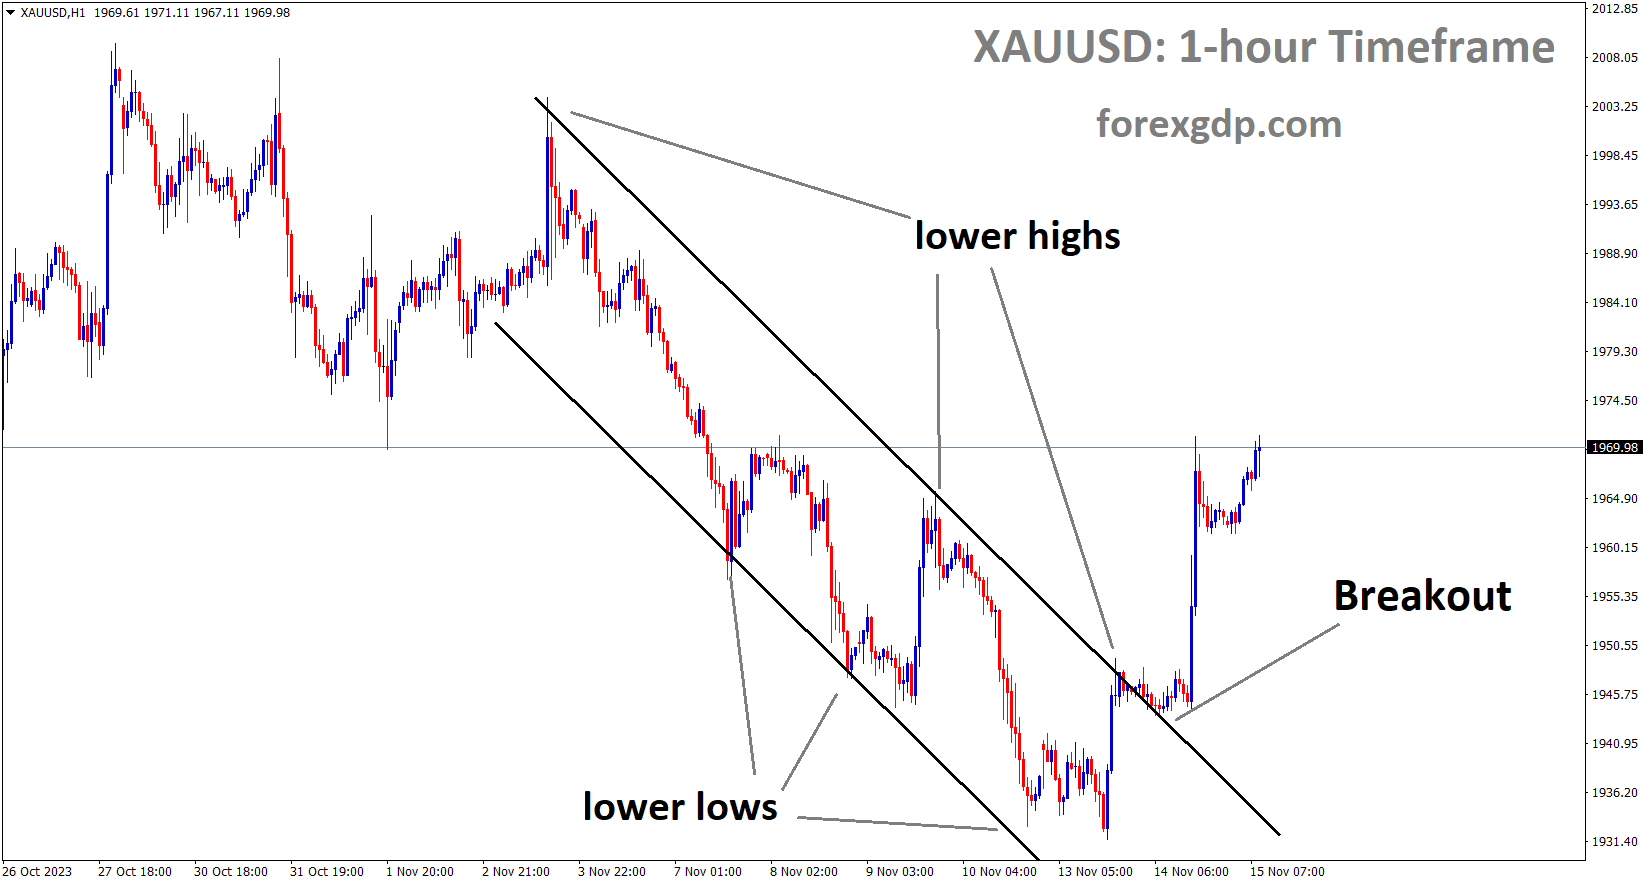 XAUUSD Gold price has broken the Descending channel in upside